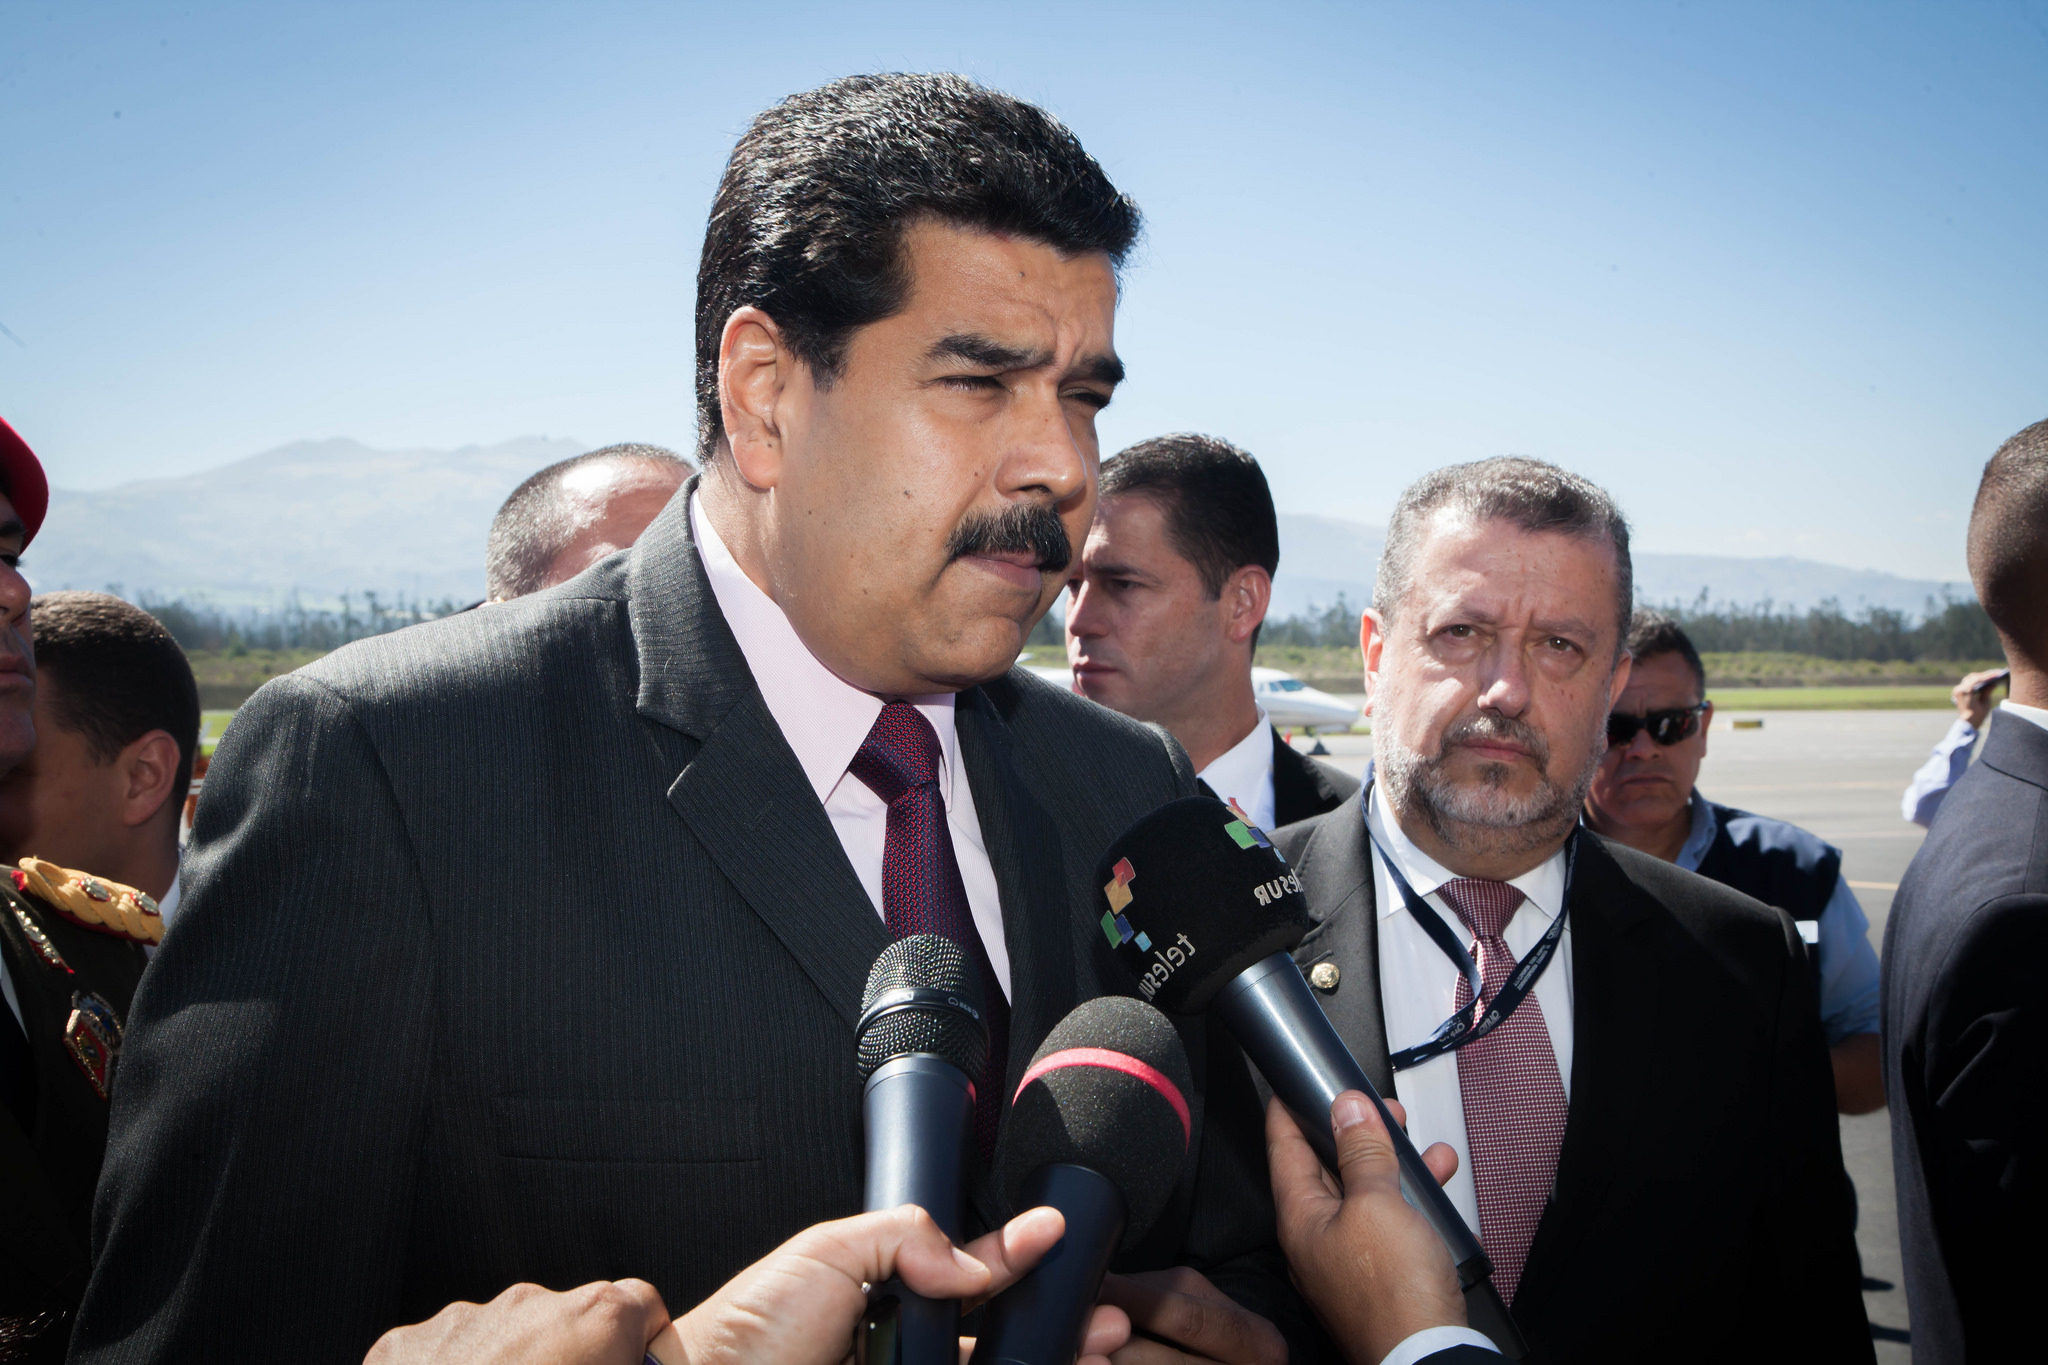 President Nicolás Maduro, 2016. (Cancillería del Ecuador via Flickr)